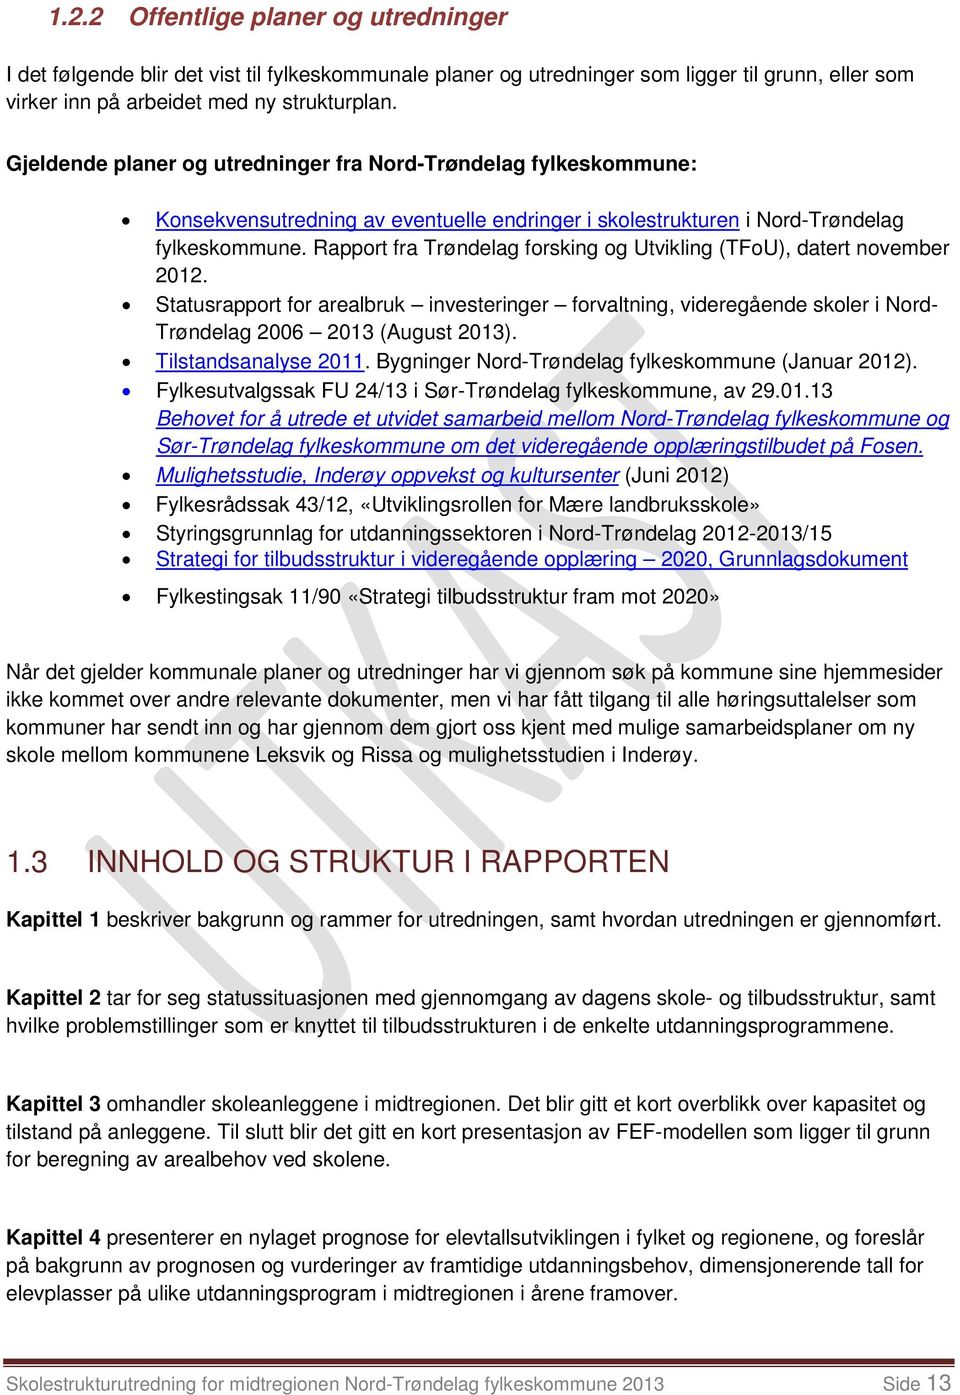 Rapport fra Trøndelag forsking og Utvikling (TFoU), datert november 2012. Statusrapport for arealbruk investeringer forvaltning, videregående skoler i Nord- Trøndelag 2006 2013 (August 2013).